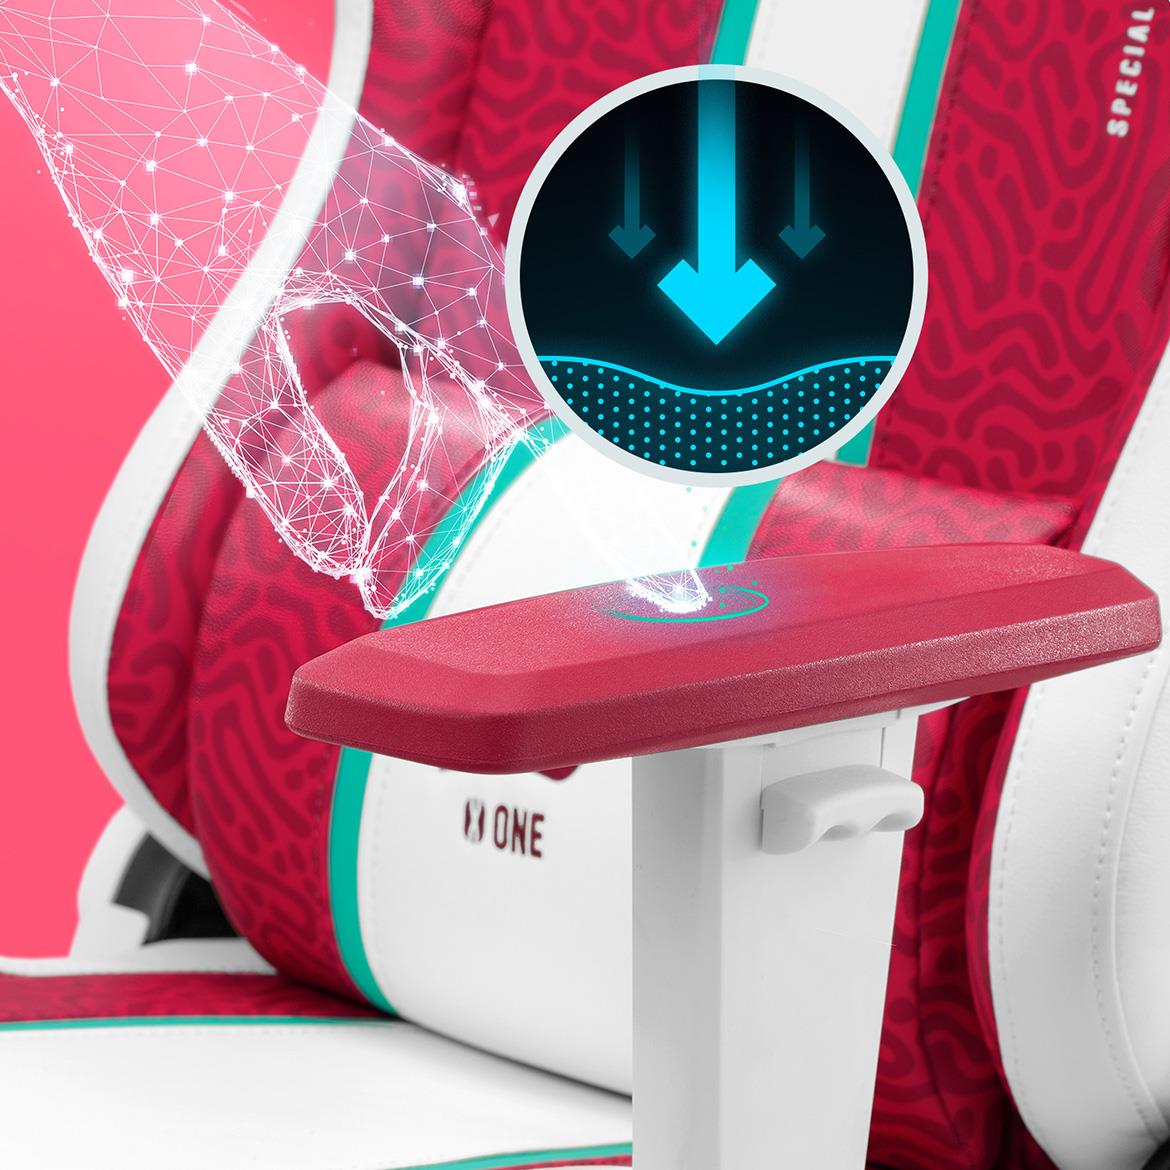 Diablo X-One 2.0 kancelarijska stolica 68x51x124 cm belo roze